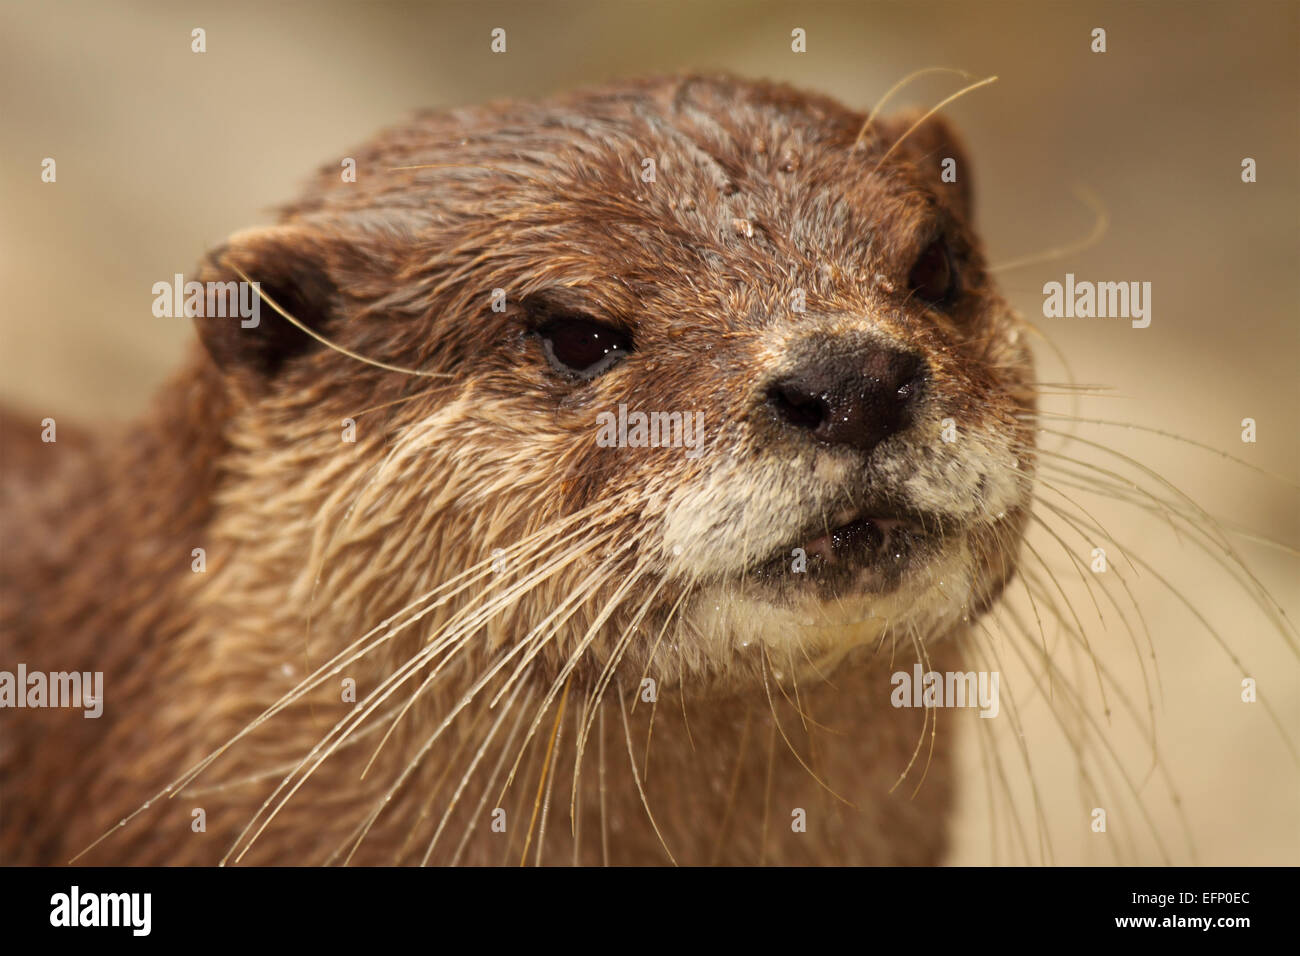 Ein Porträt von einer afrikanischen Clawless Otter, zeigt einen detaillierten Überblick über seine lange Schnurrhaare. Stockfoto